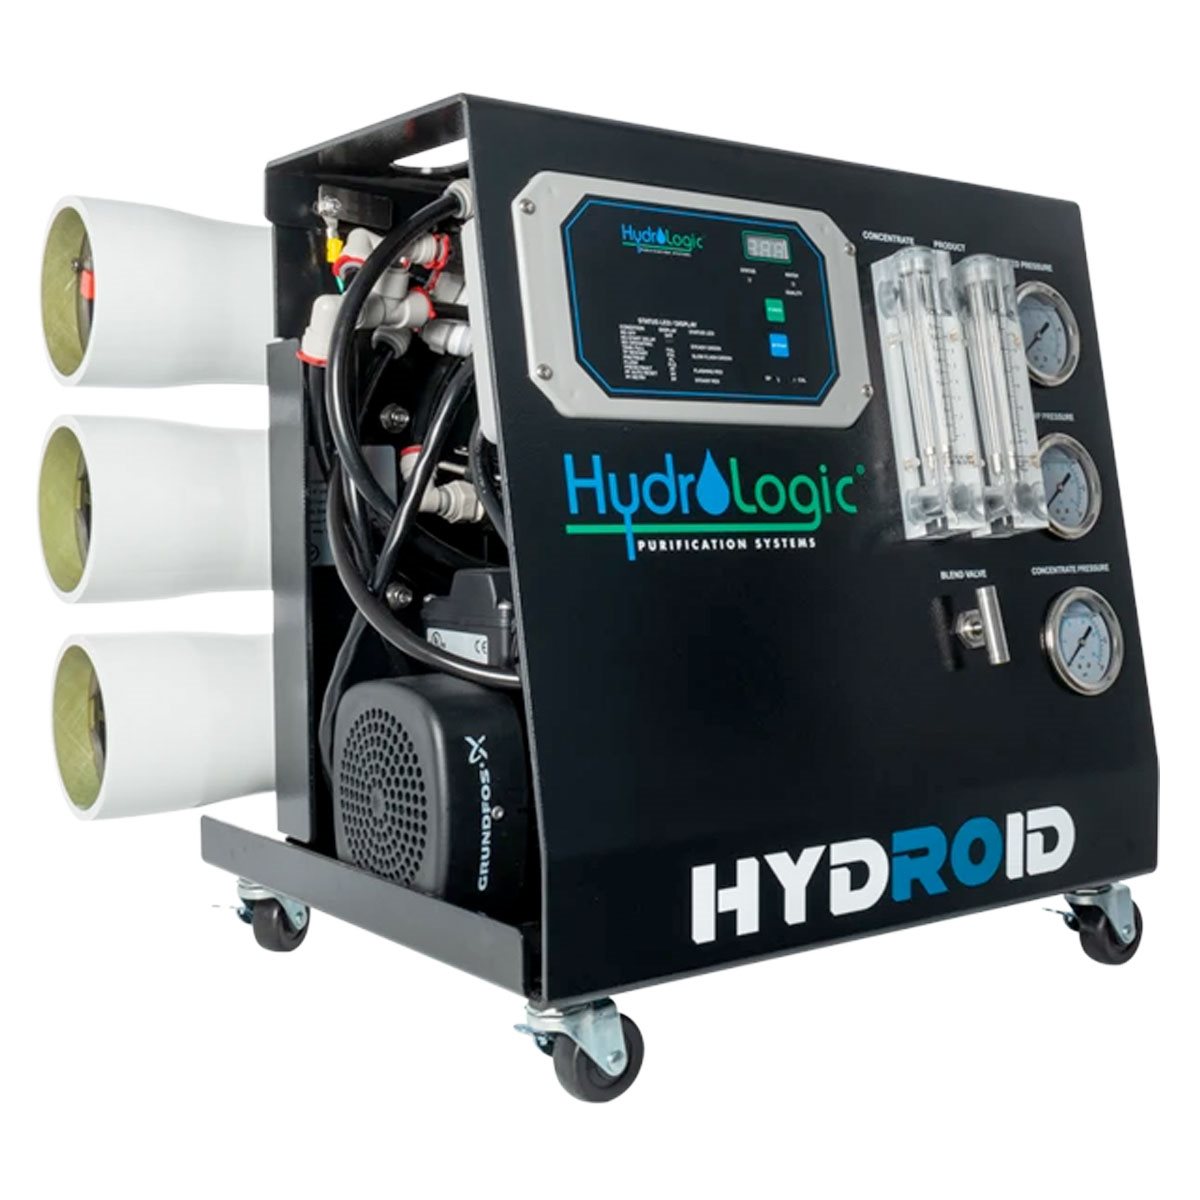 HydroLogic Hydroid System